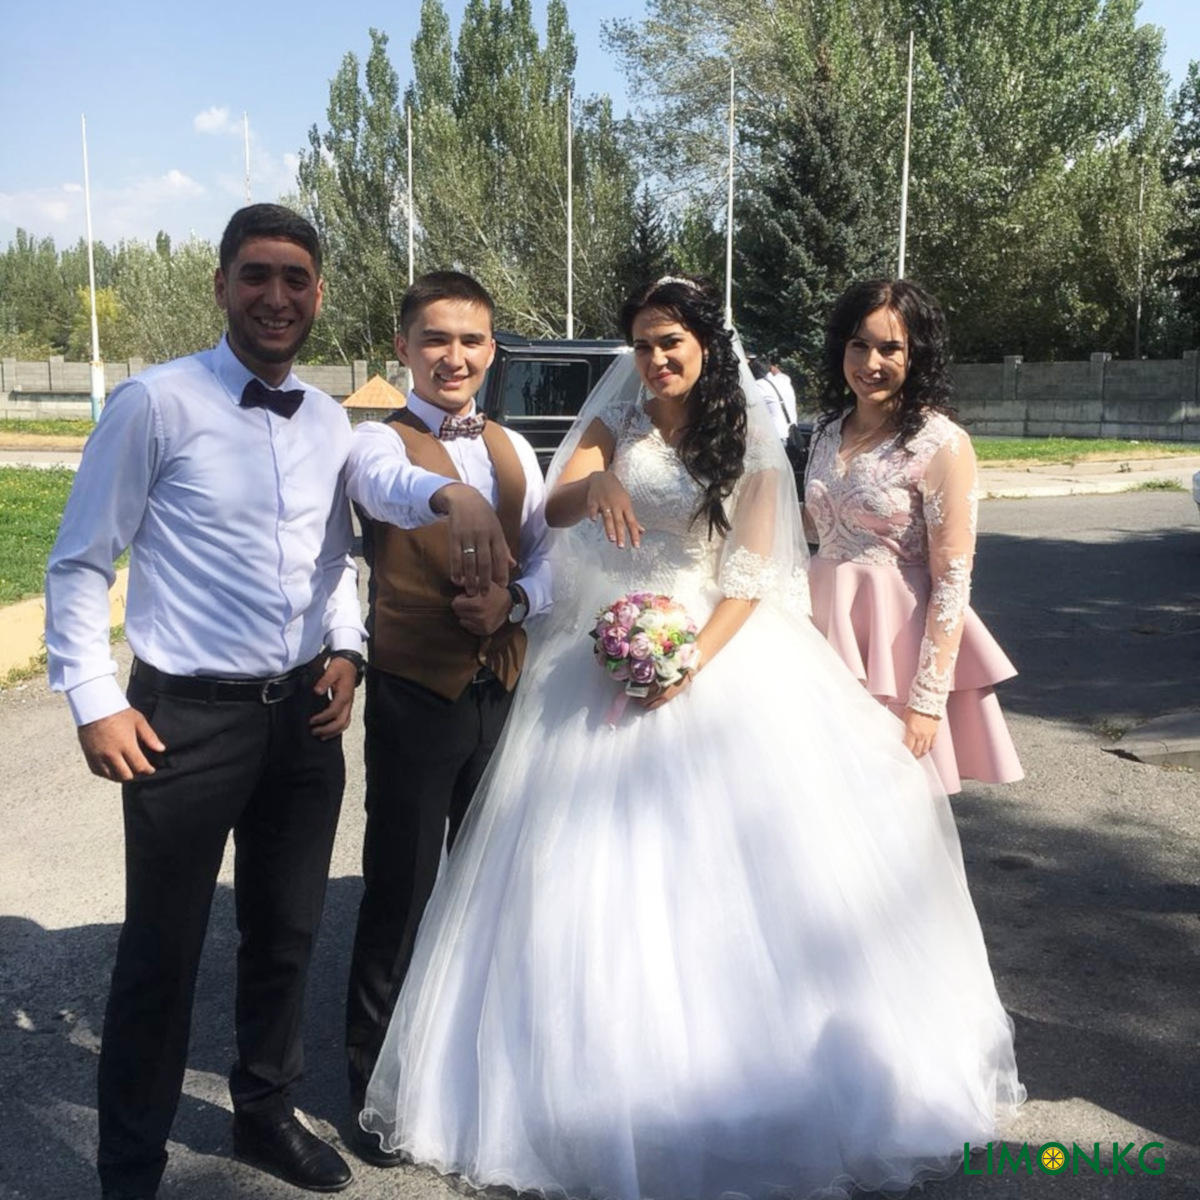 Ах, эта свадьба! Приватные фото русских невест, которые почему-то оказались в сети